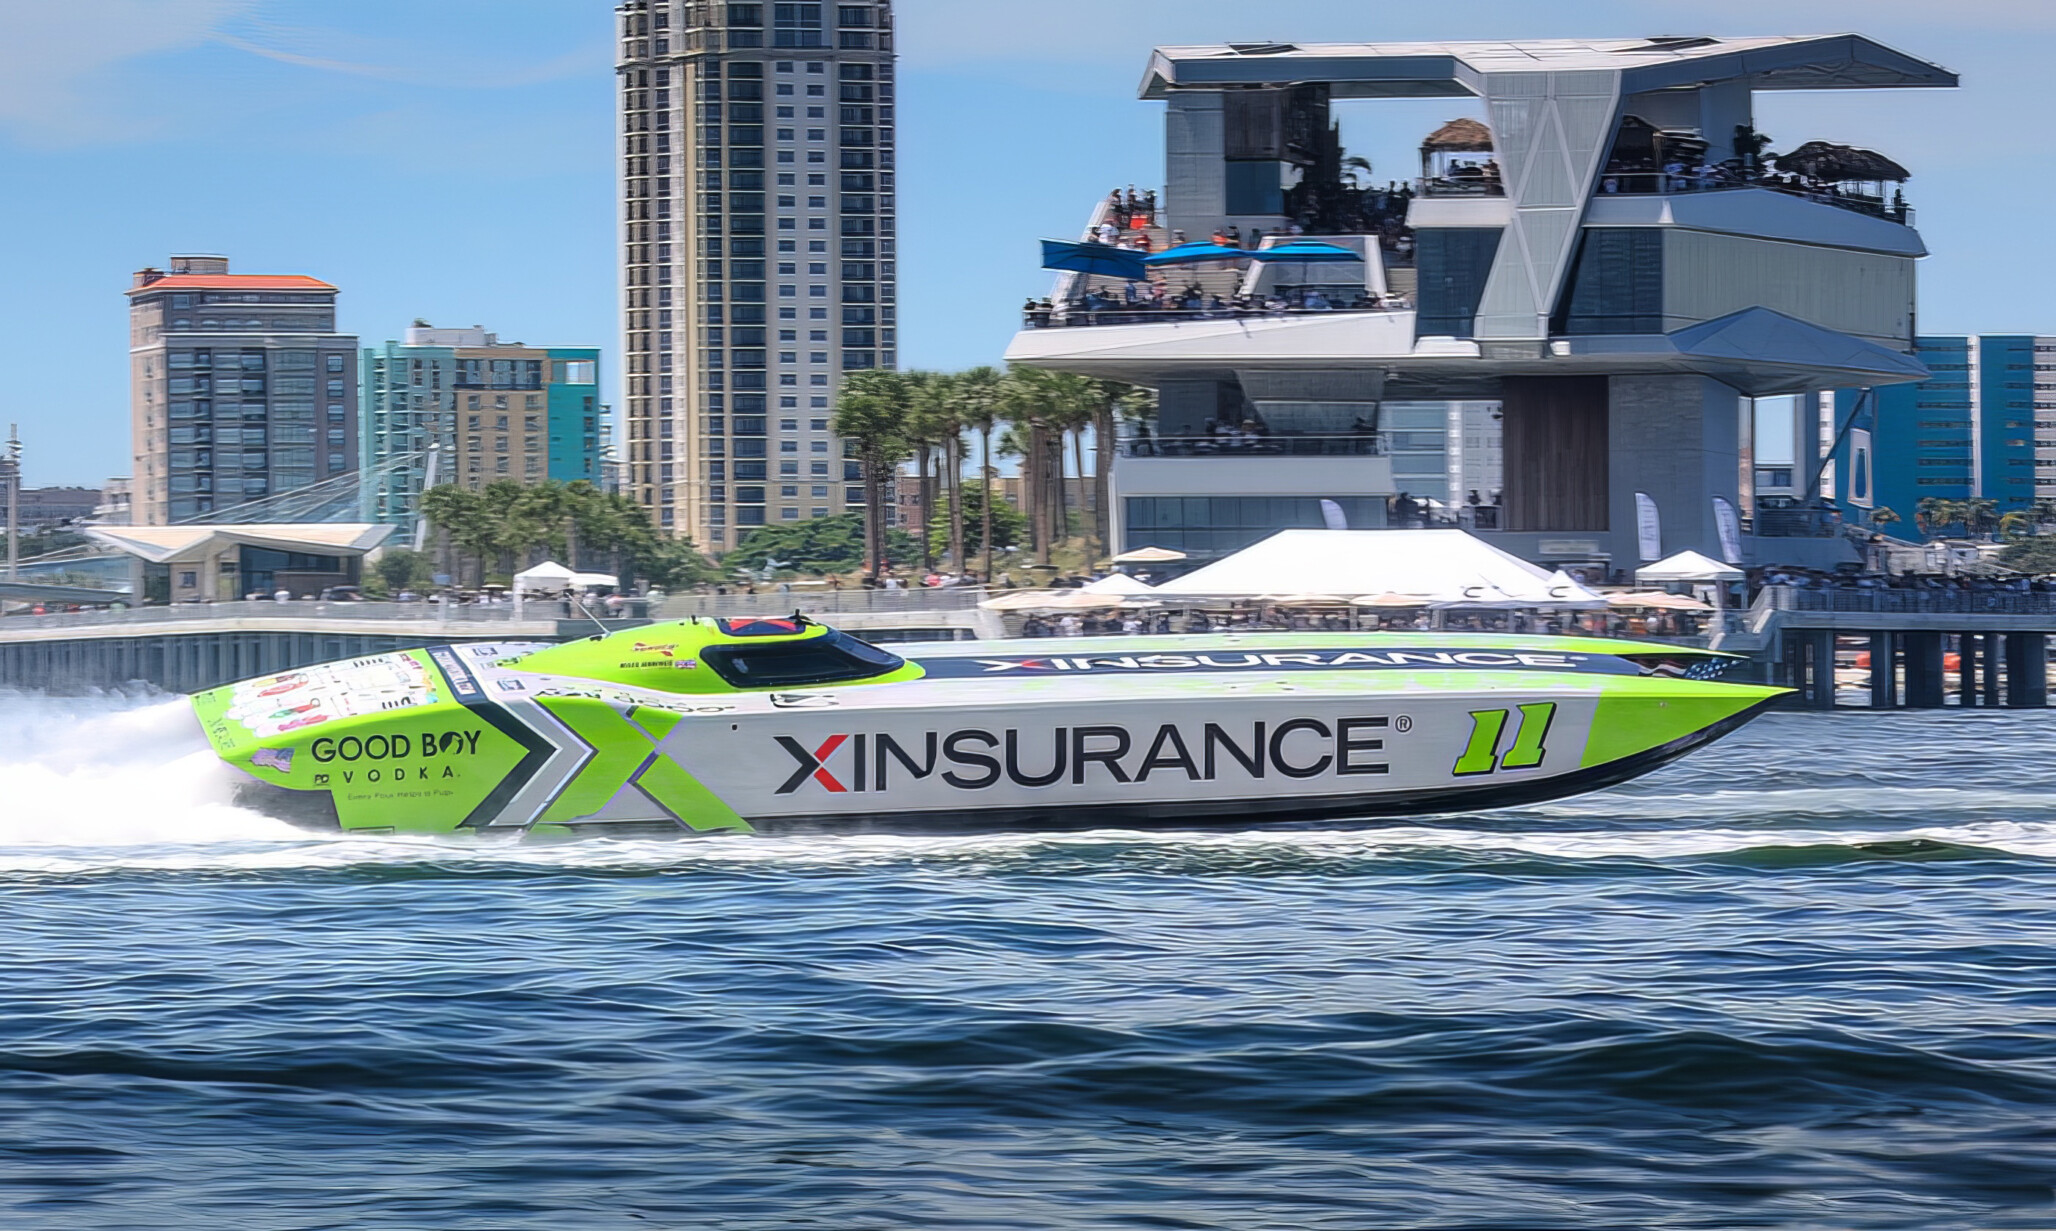 XINSURANCE sponsors Powerboat P1